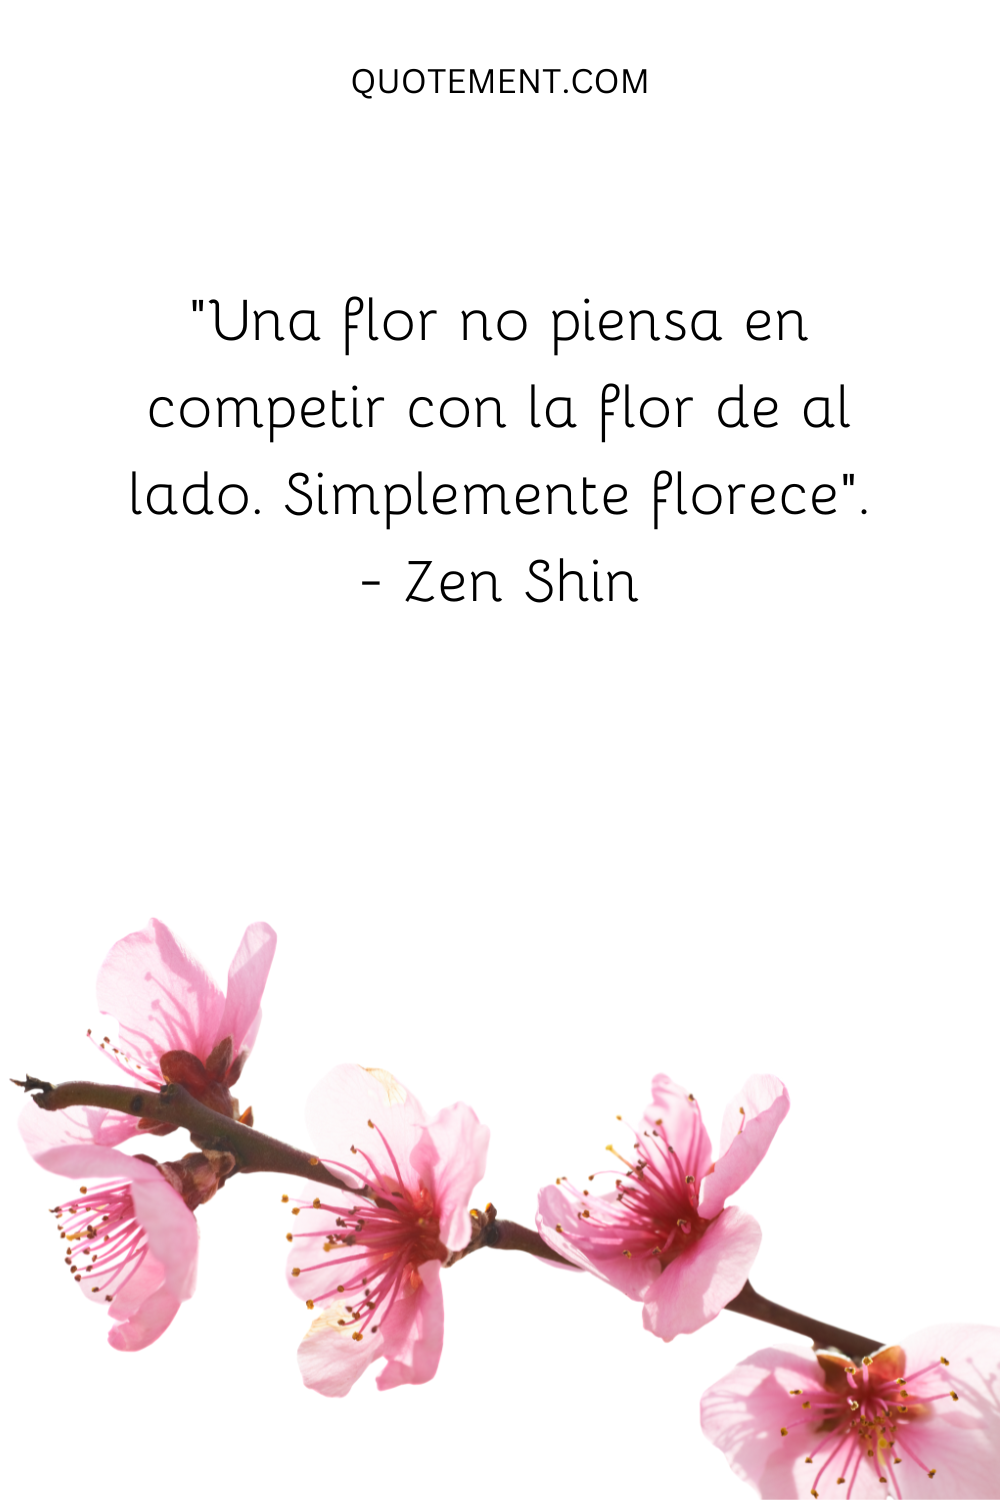 "Una flor no piensa en competir con la flor de al lado. Simplemente florece". - Zen Shin